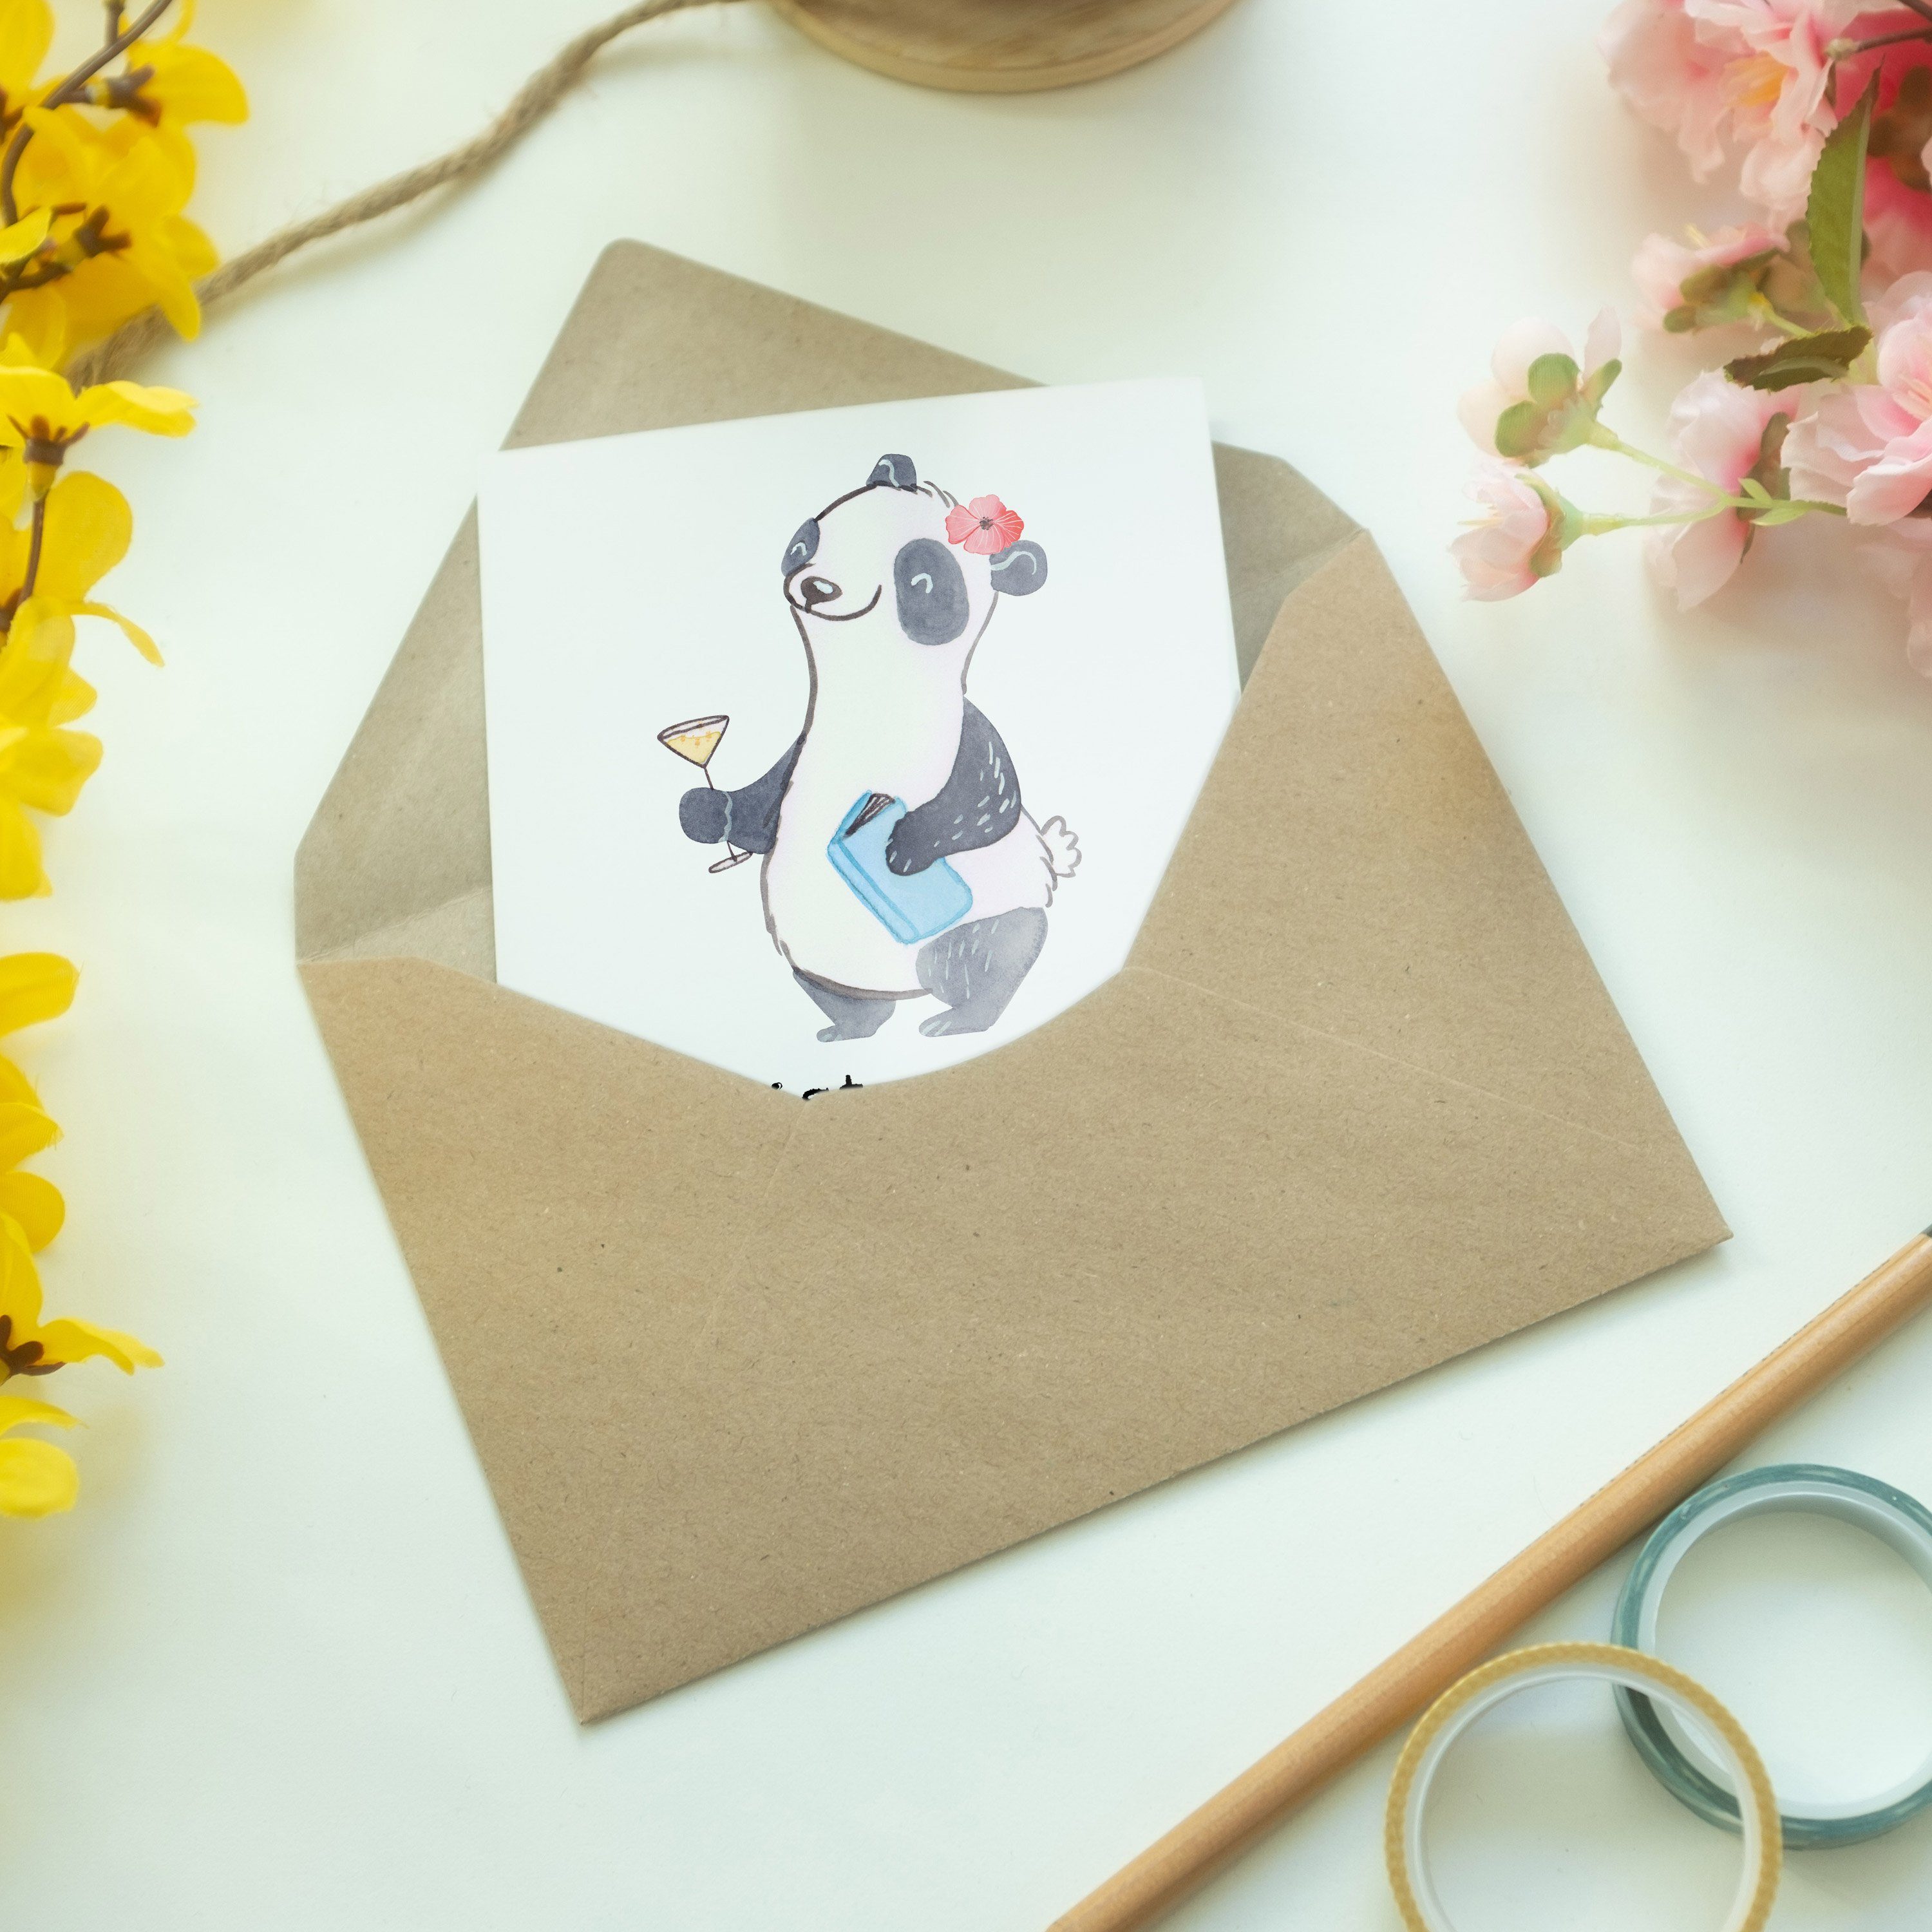 - K Eventmanagerin Herz Panda mit Mr. Glückwunschkarte, Firma, Mrs. & Weiß Grußkarte - Geschenk,